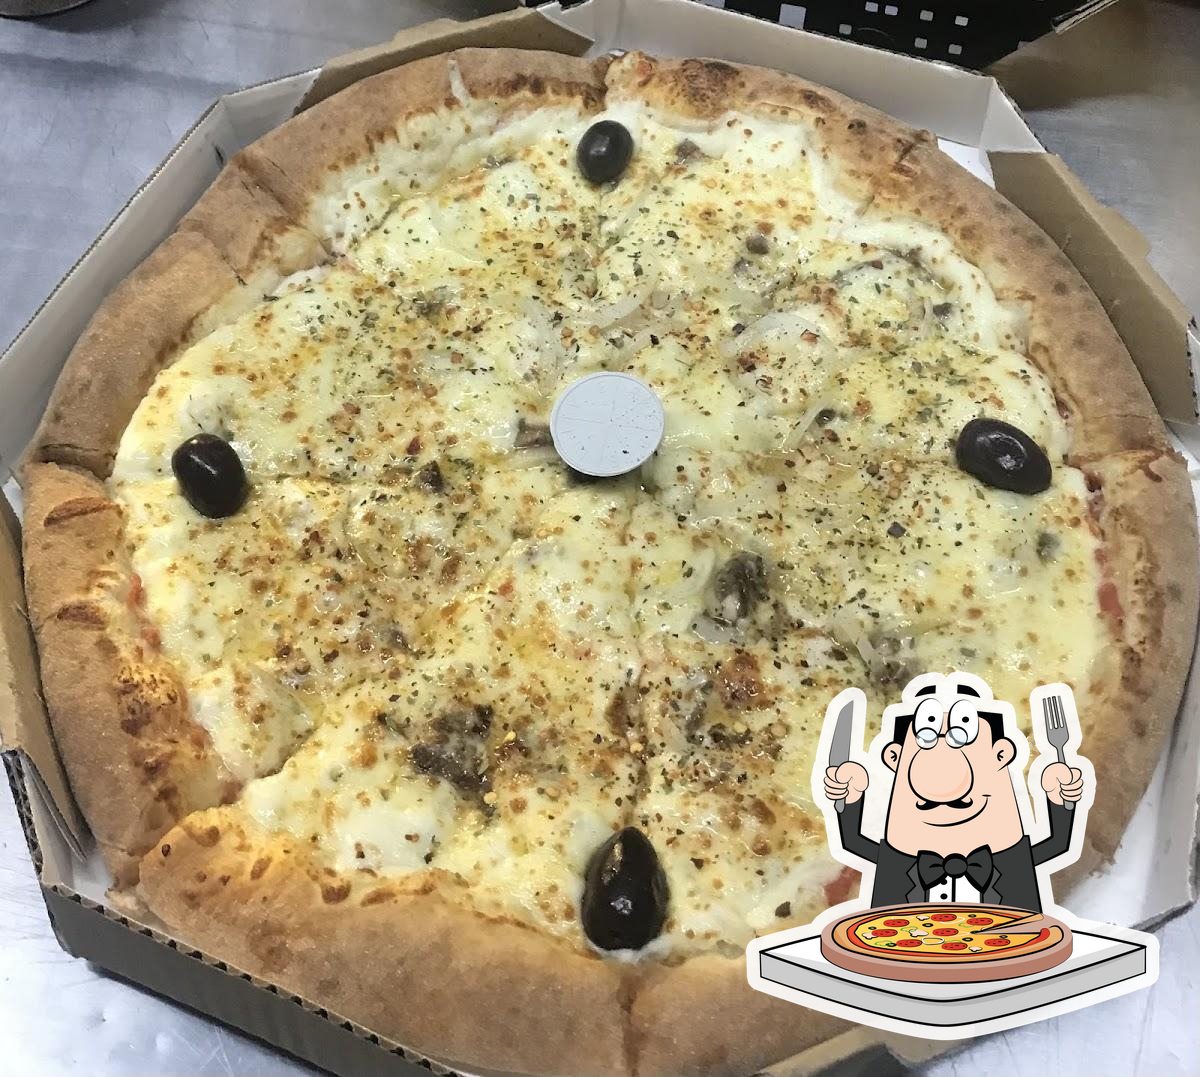 Pizza Place São Caetano - Lembrete: Hoje é quinta, dia de saborear